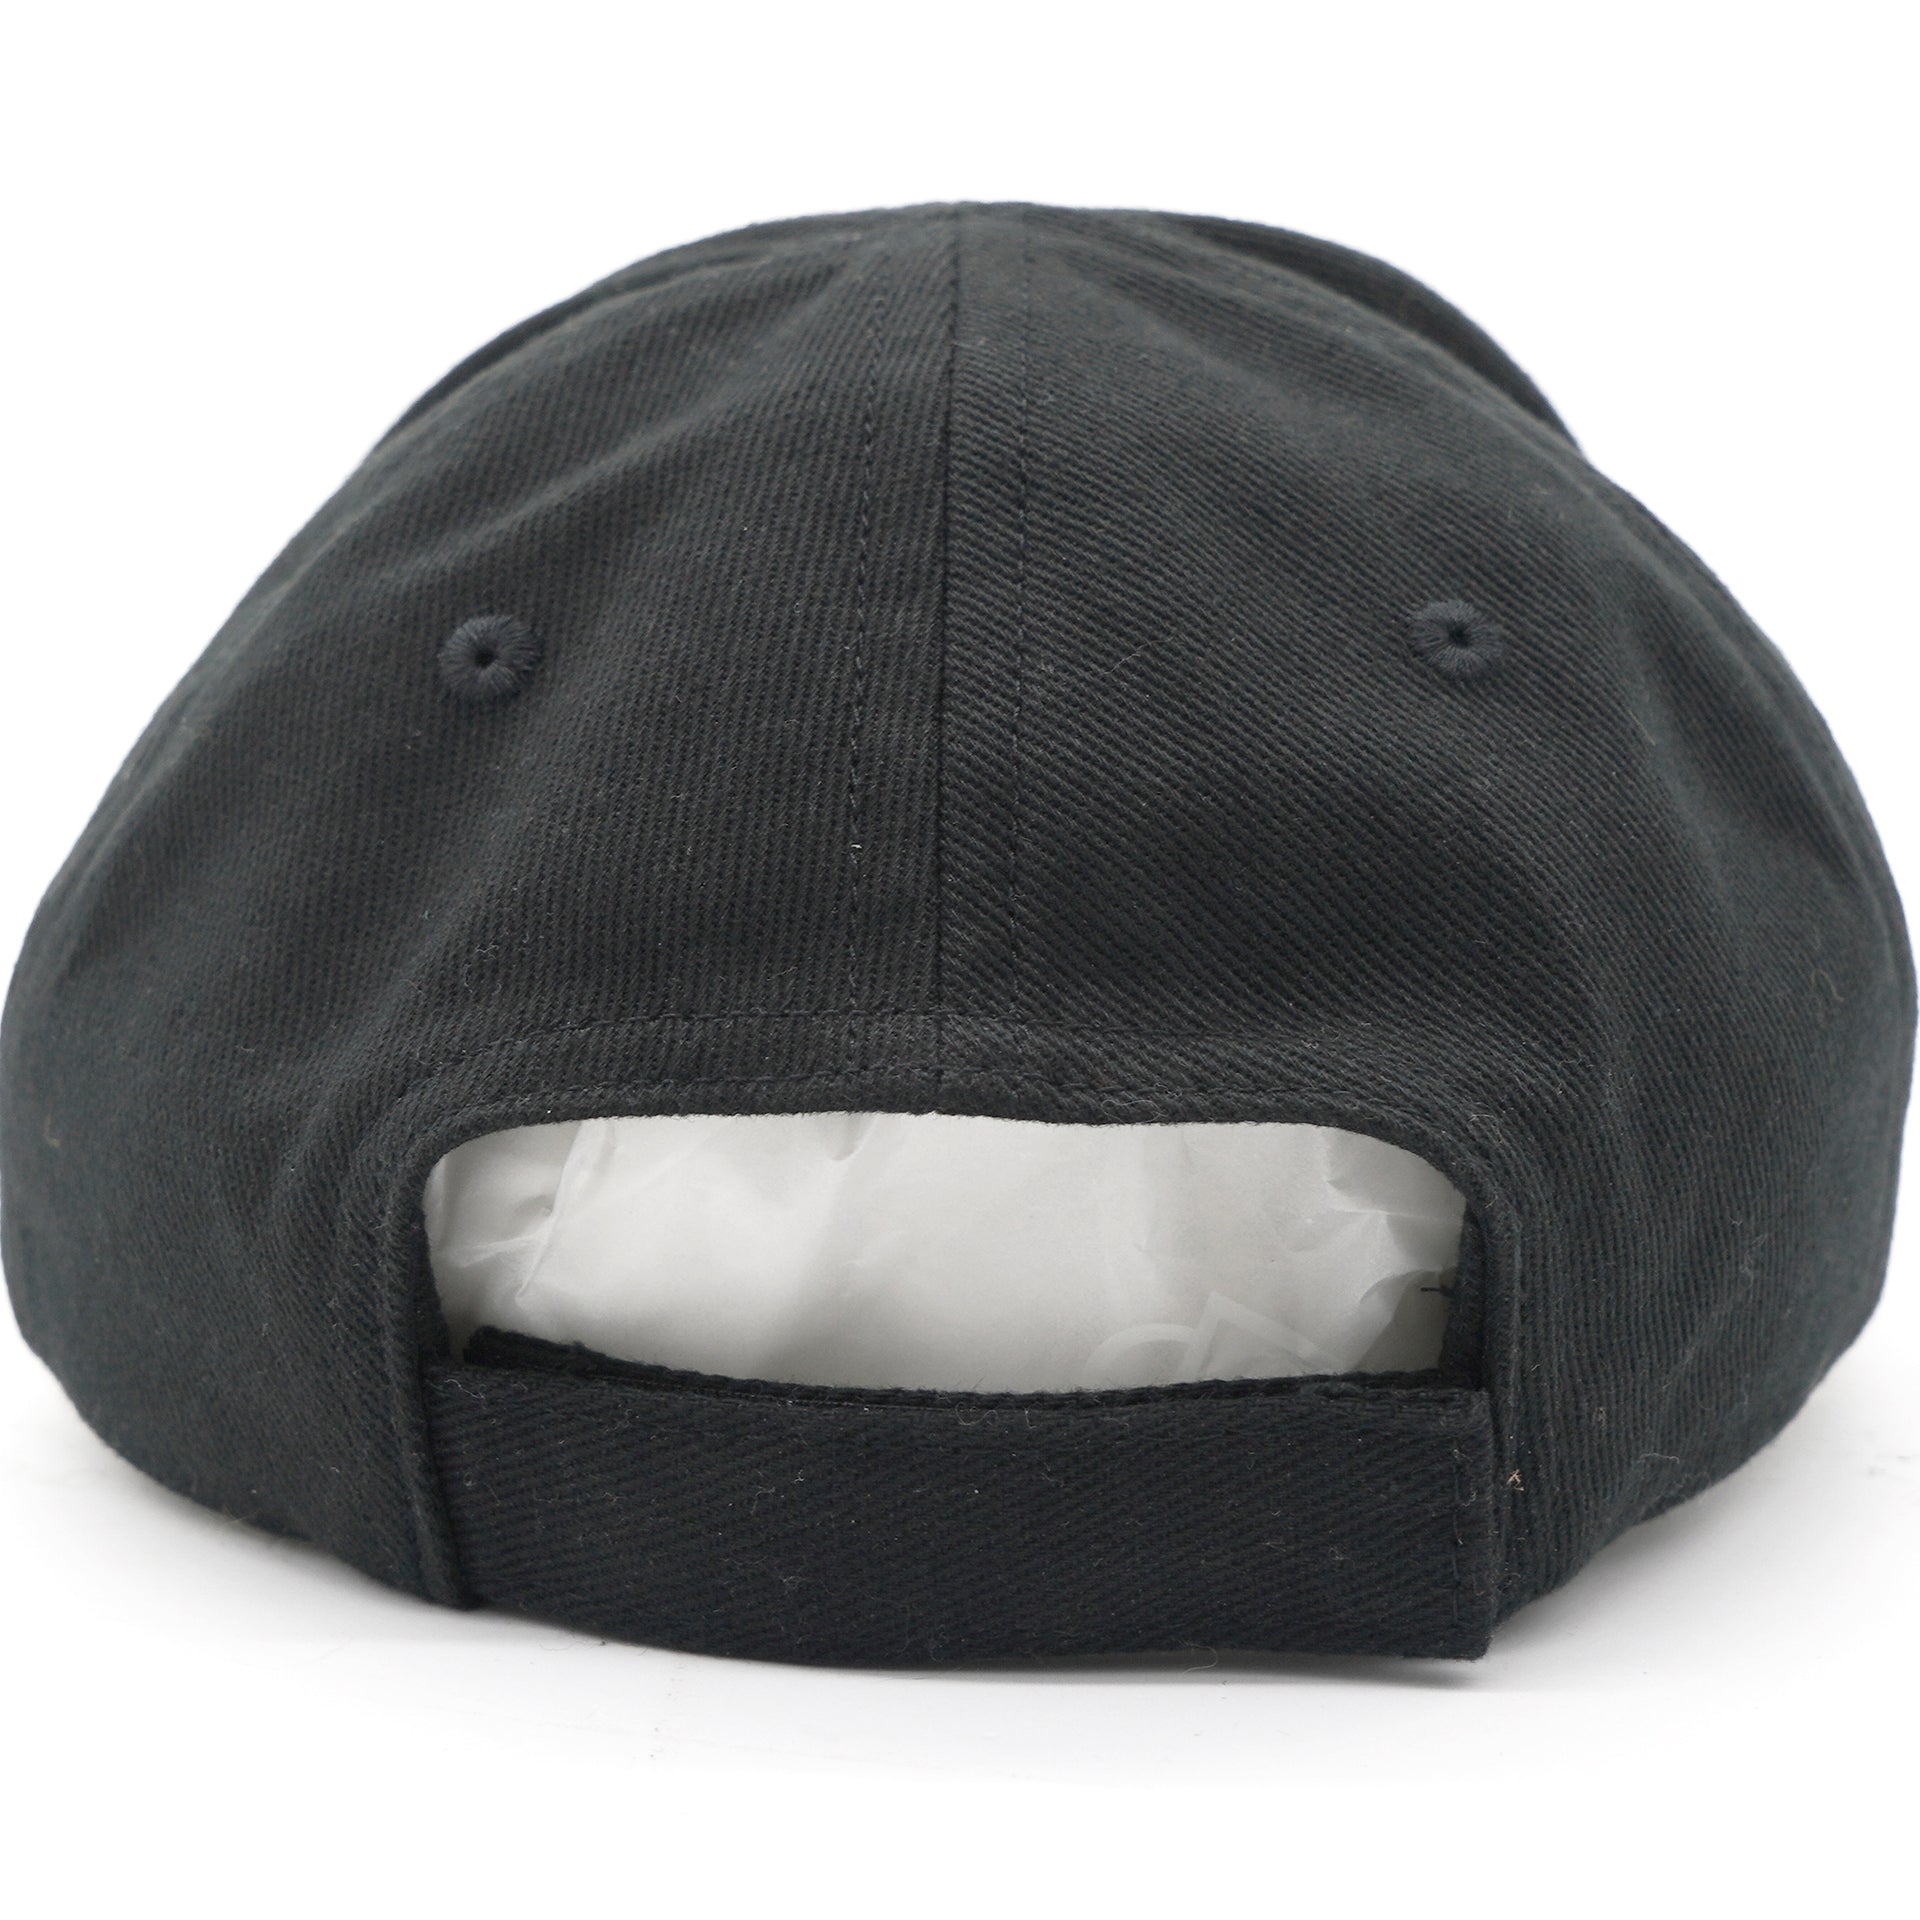 Black “CREW” Cotton Cap